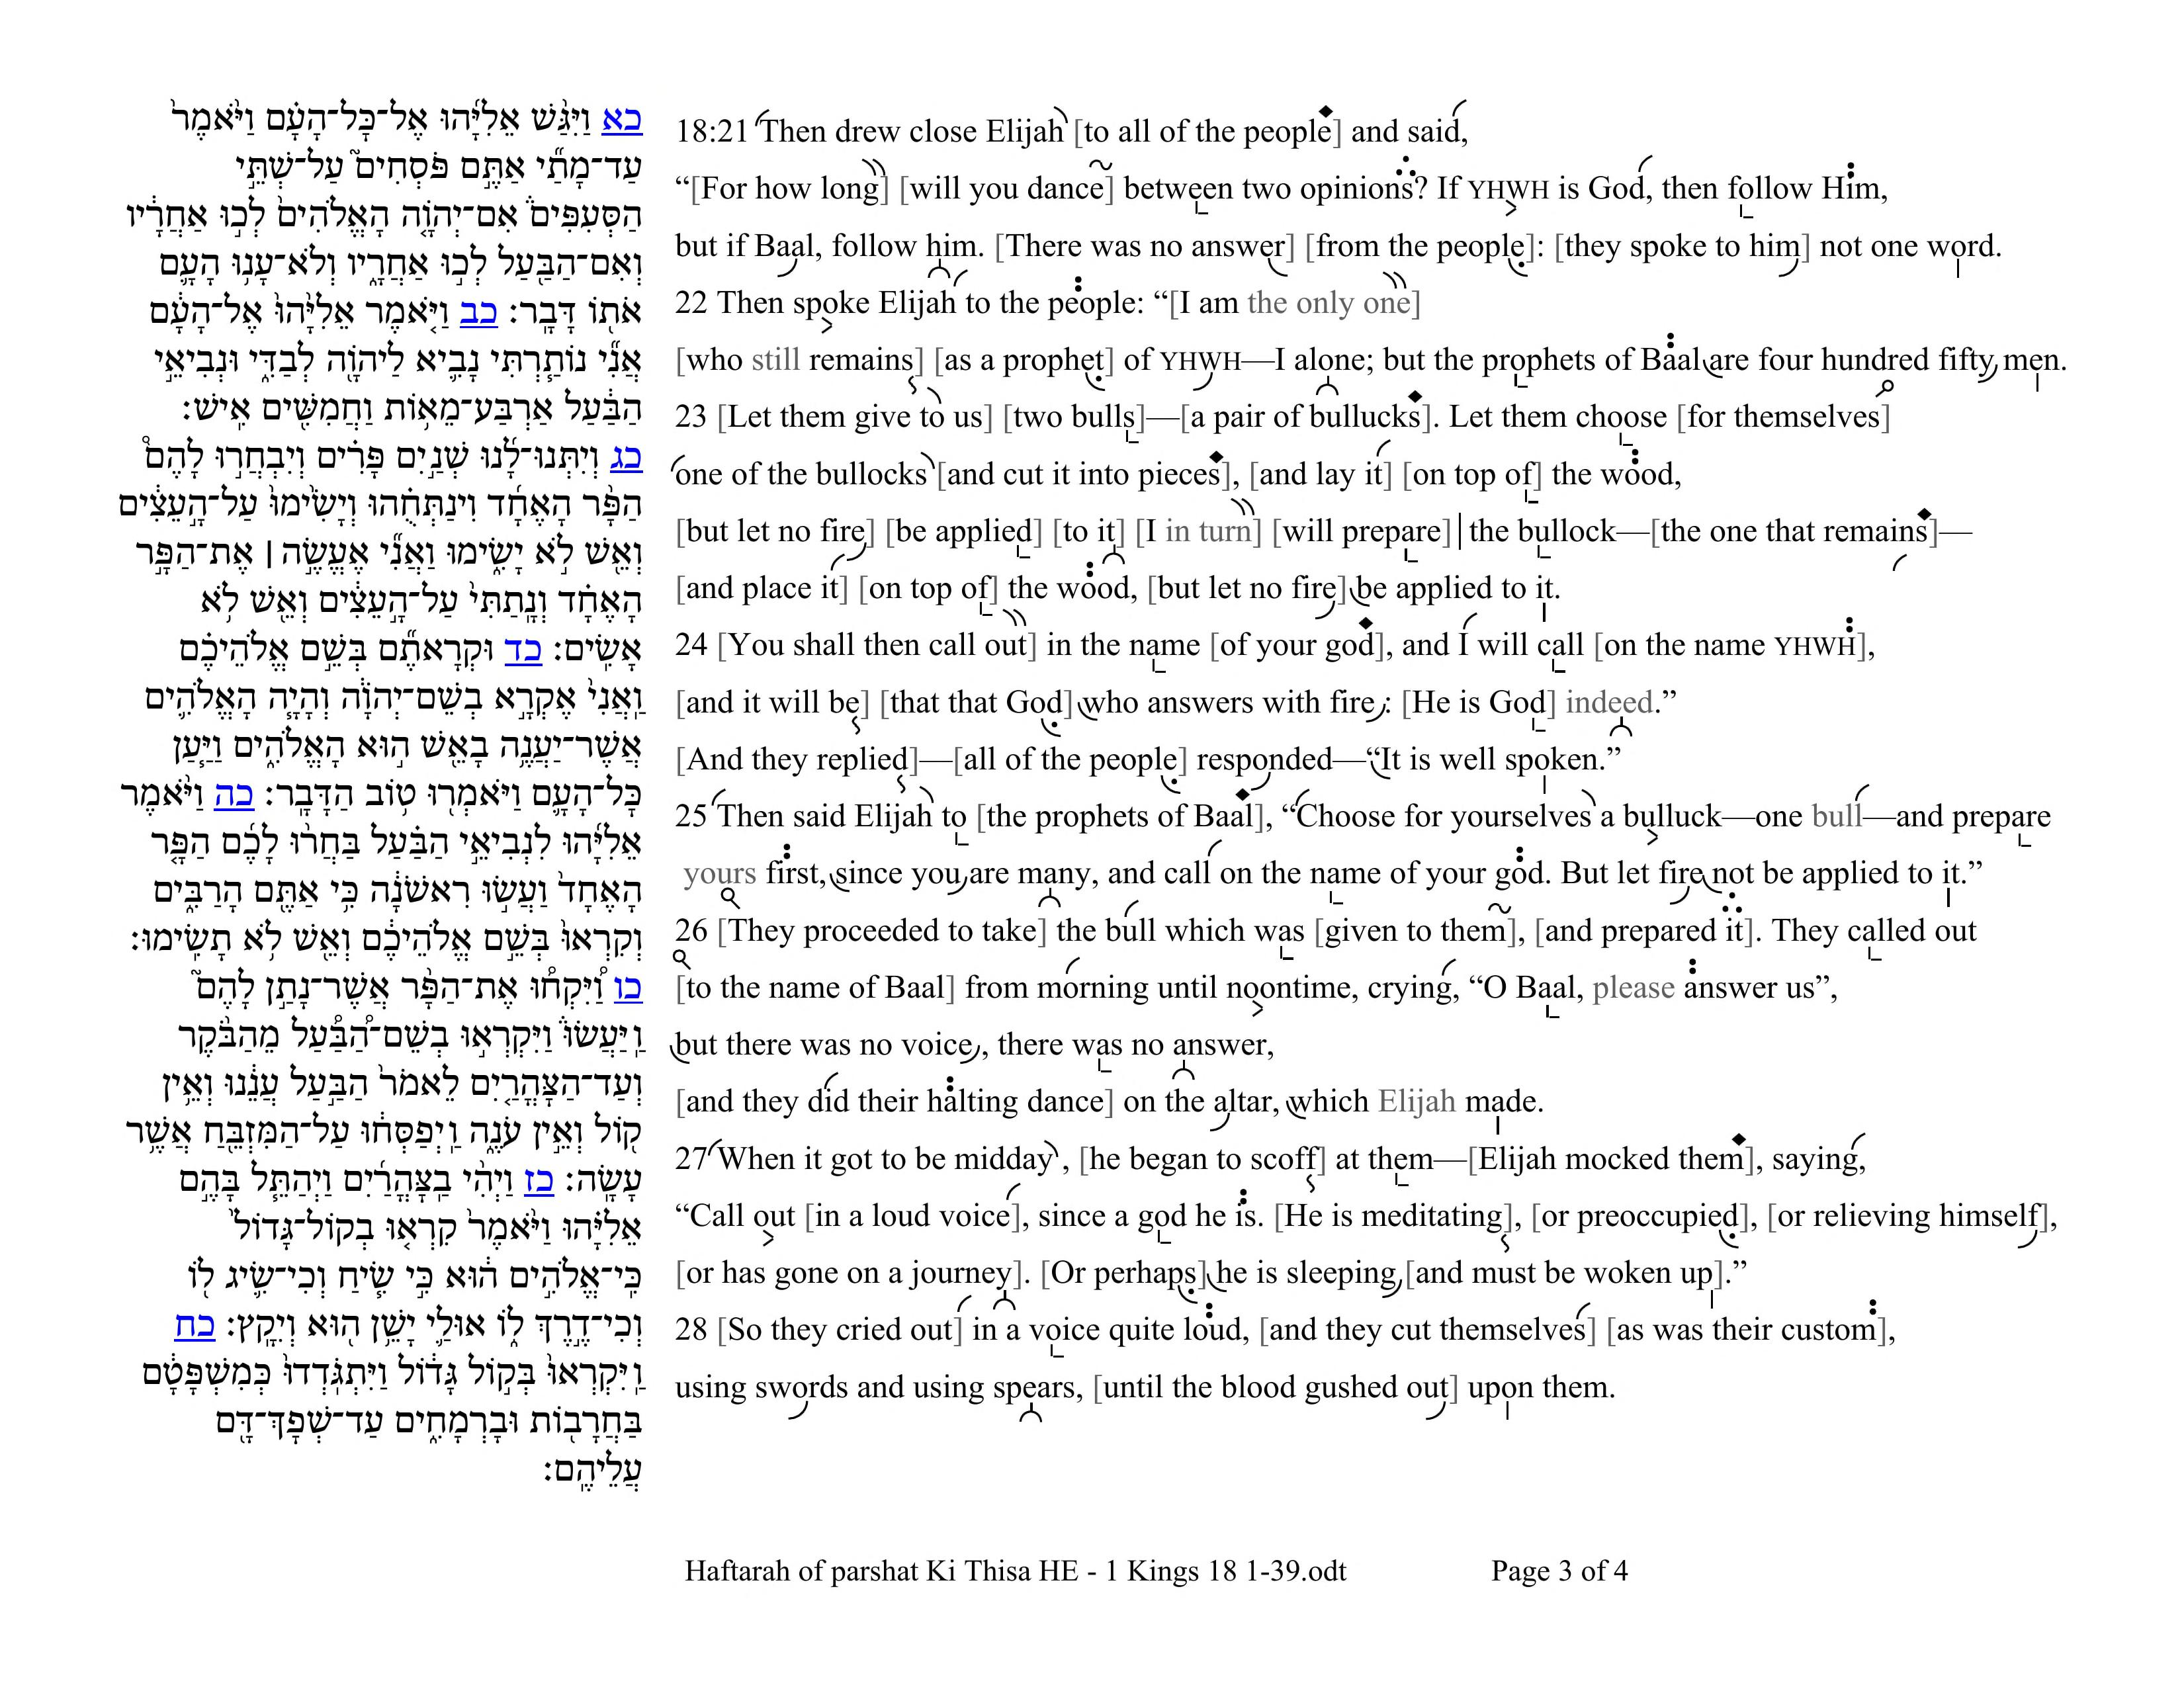 💬 Haftarah Reading for Parashat Ki Tissa (1 Kings 18:1-39